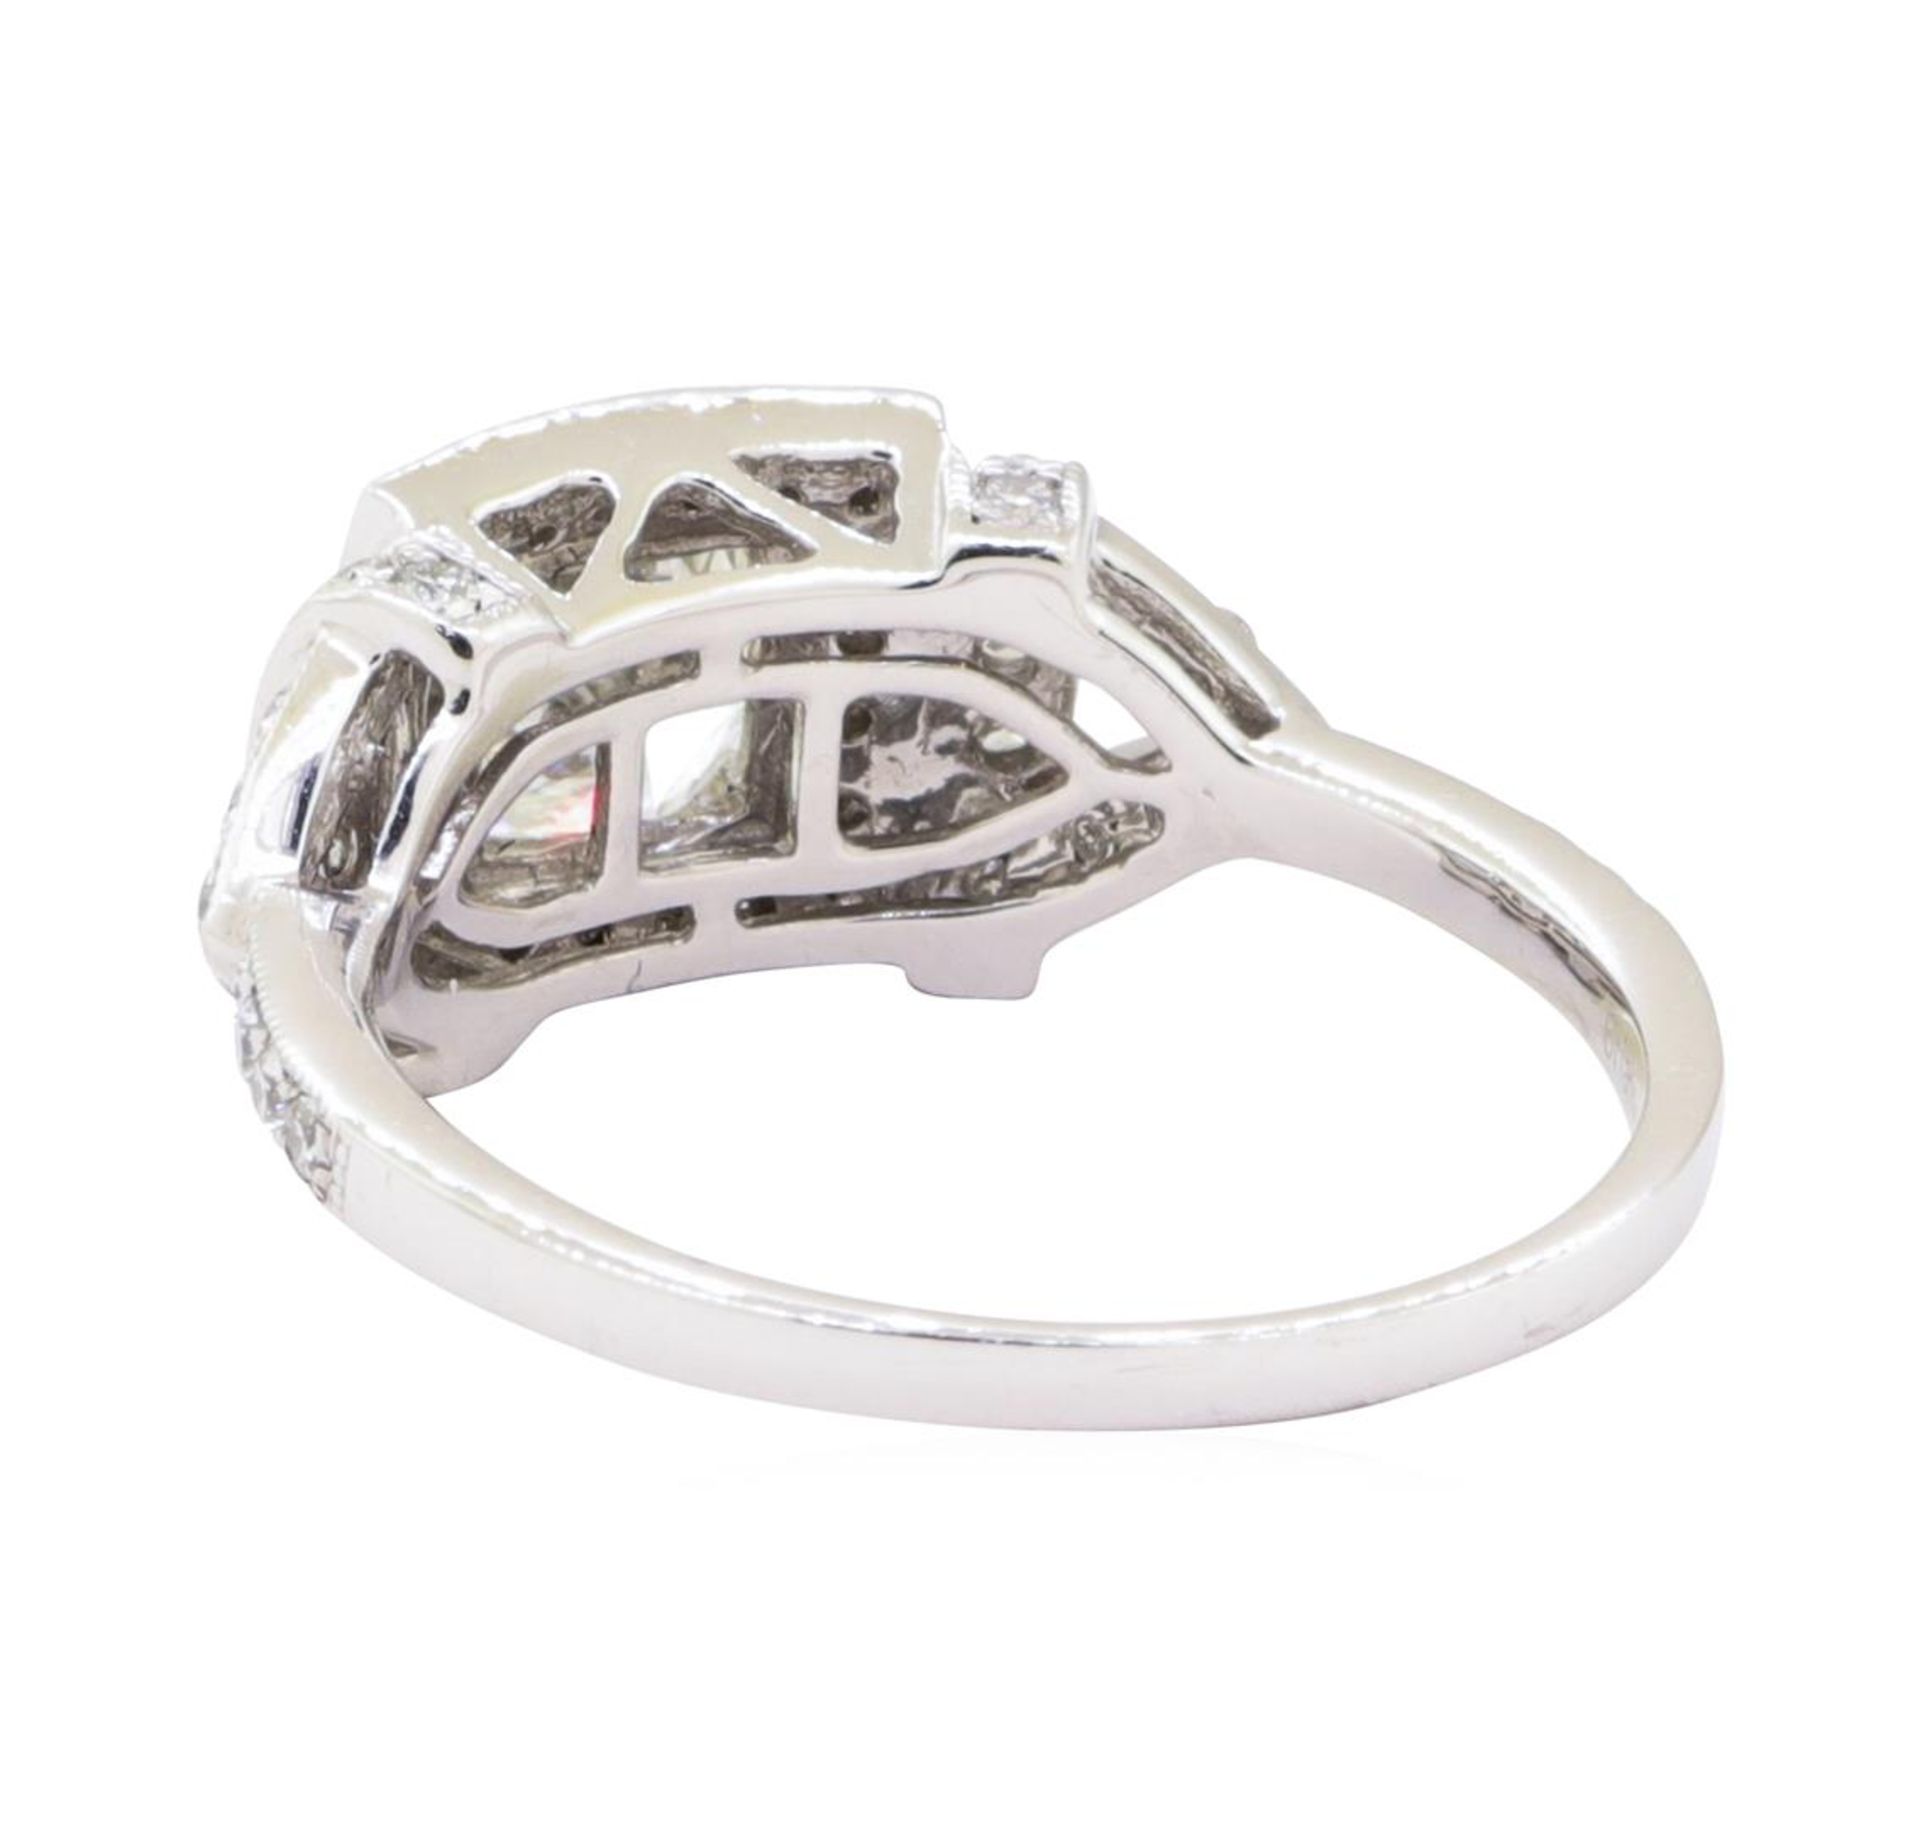 1.51ctw Diamond Ring - Platinum - Image 3 of 4